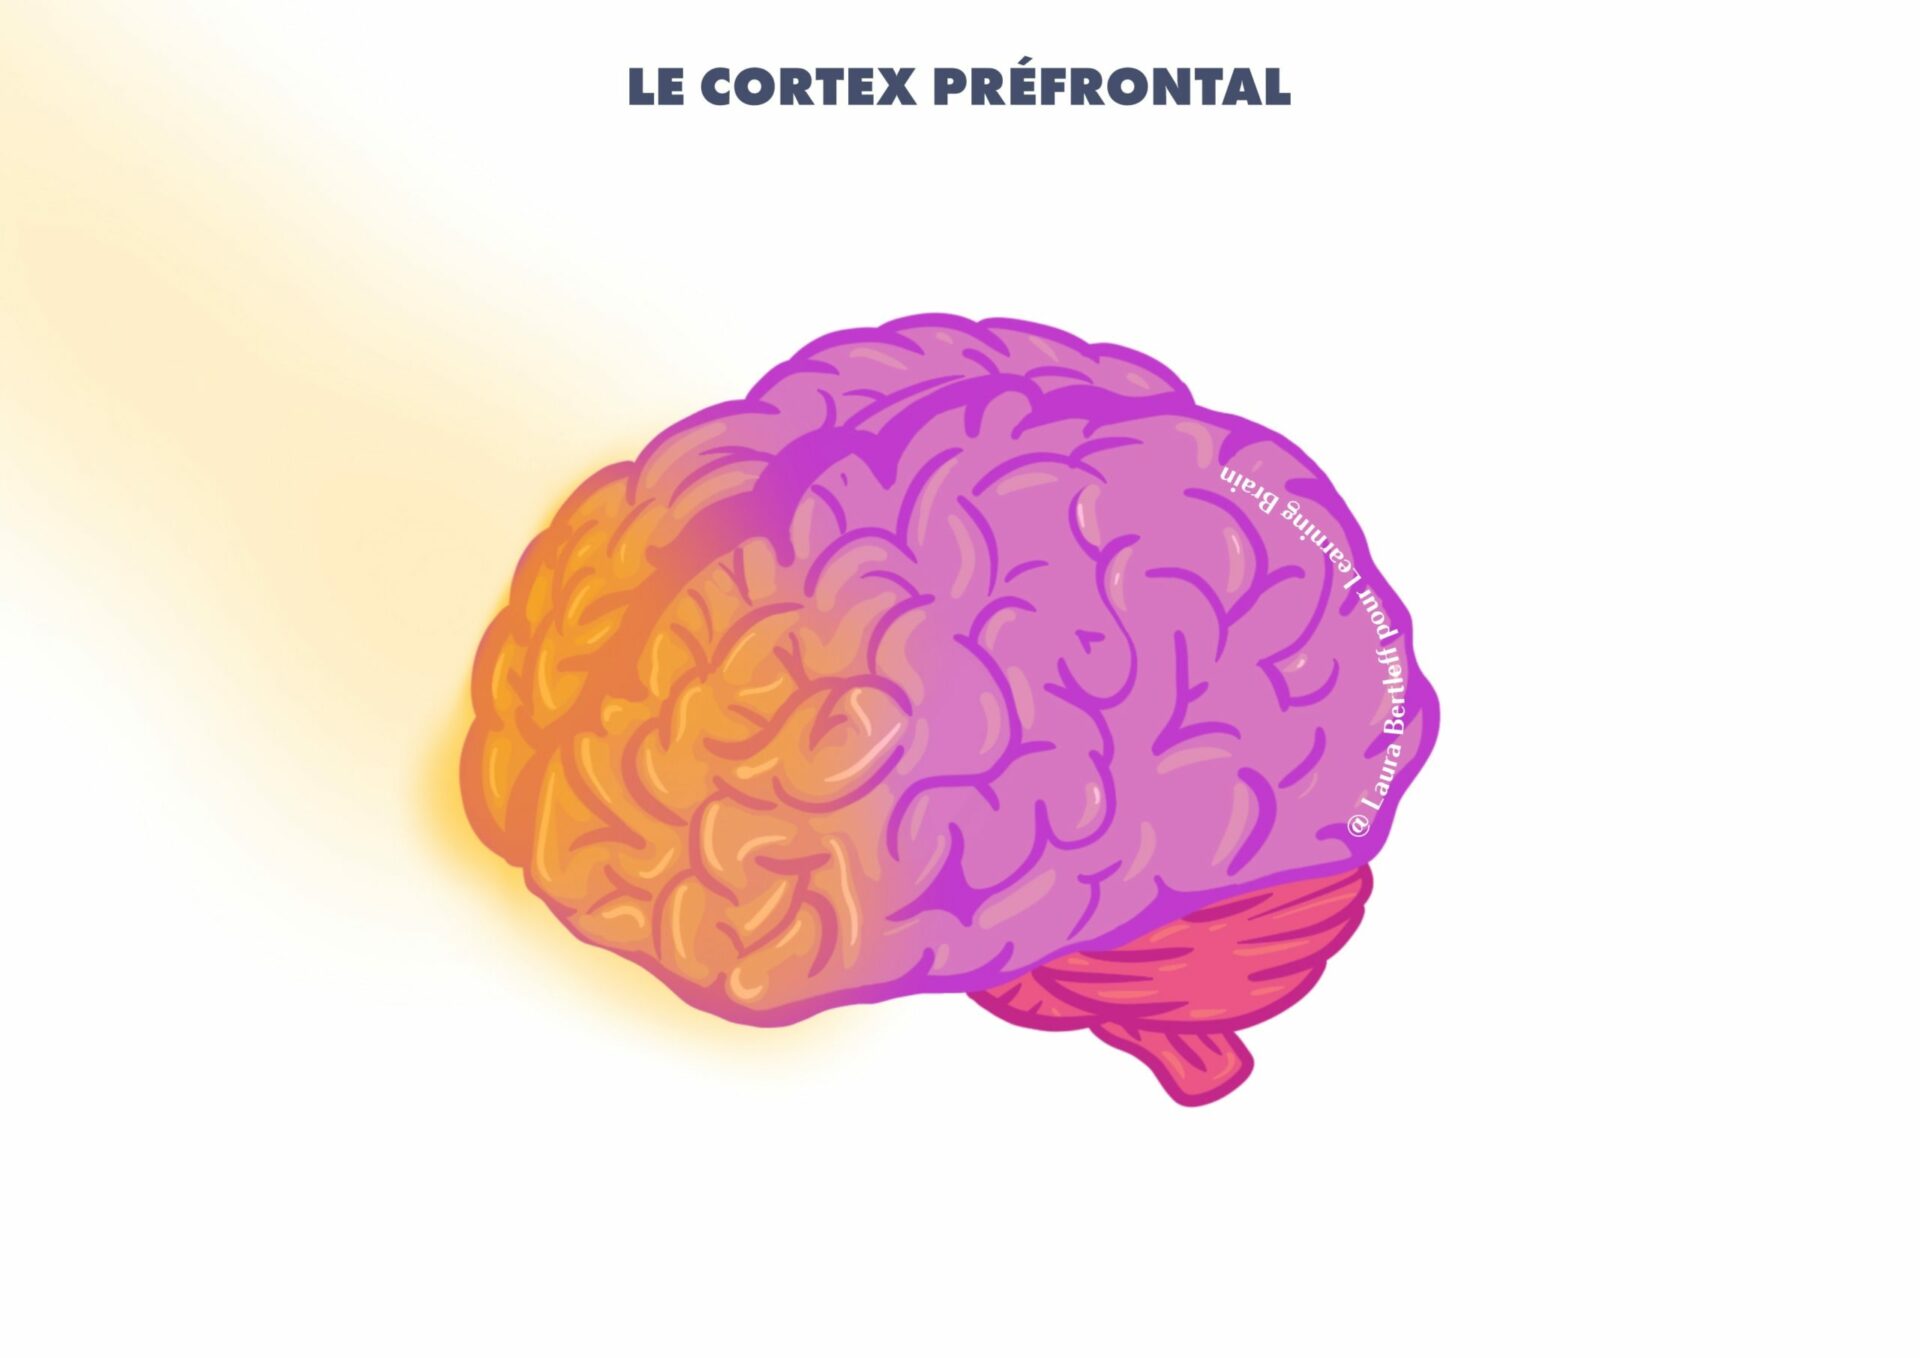 Cortex préfrontal LB milieu